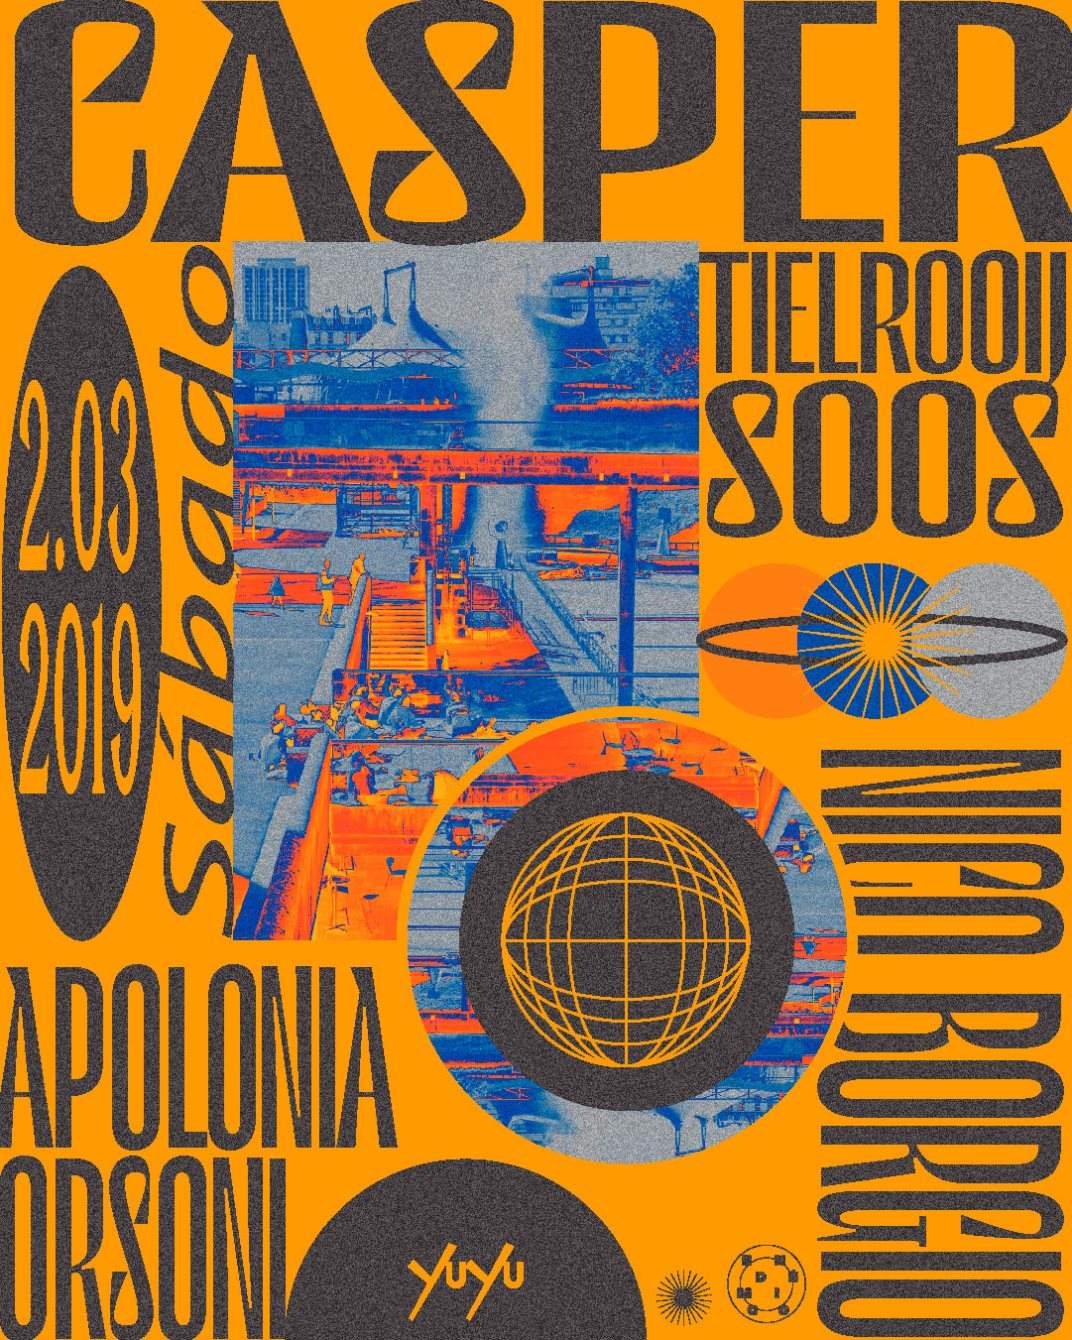 Casper Tielrooij / Soos / Apollonia Orsoni / Nico Borgio - Página frontal